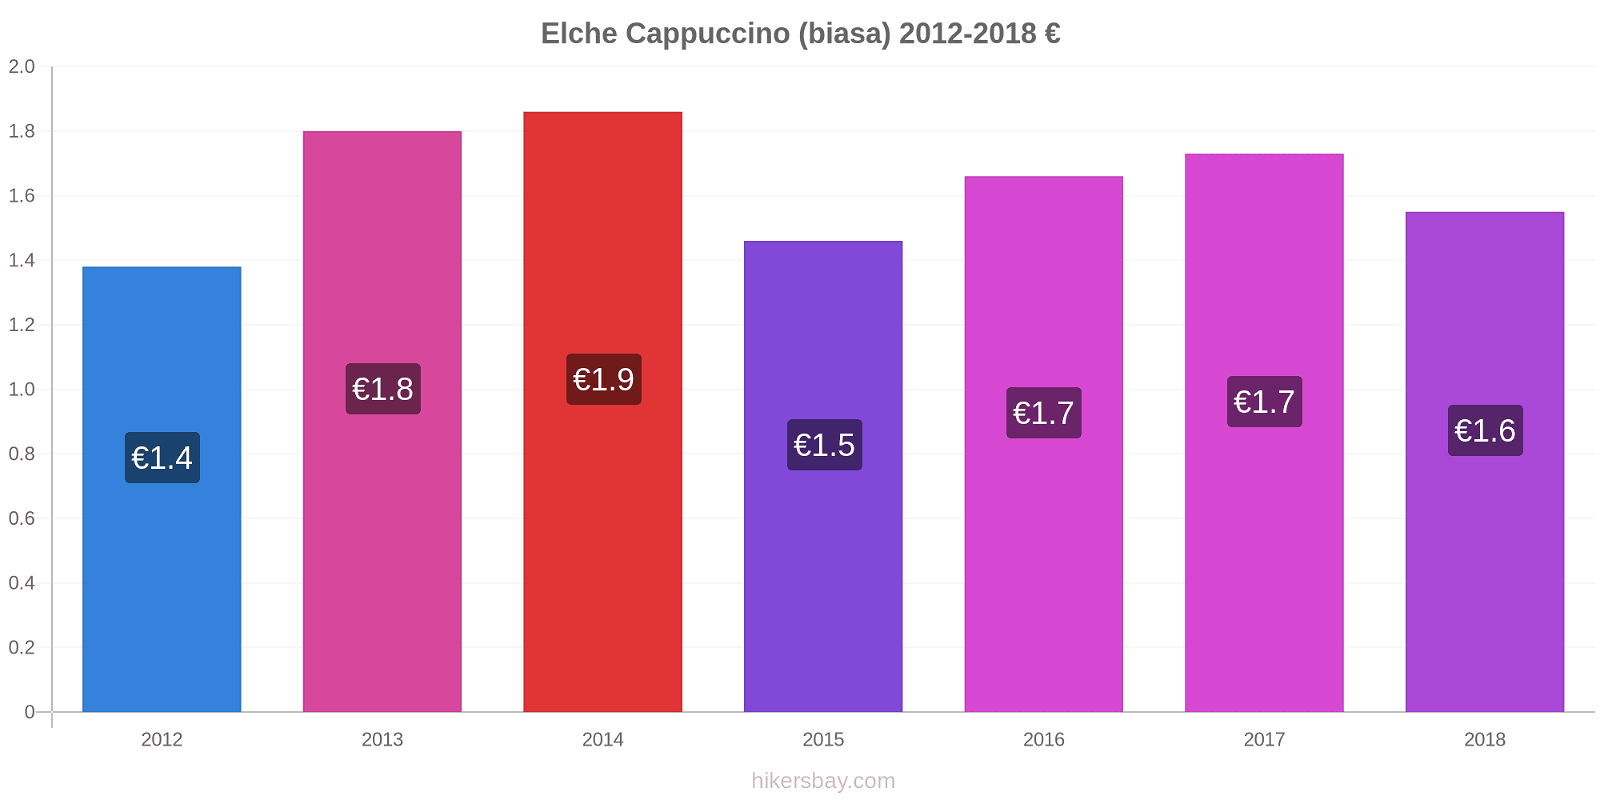 Elche perubahan harga Cappuccino (biasa) hikersbay.com